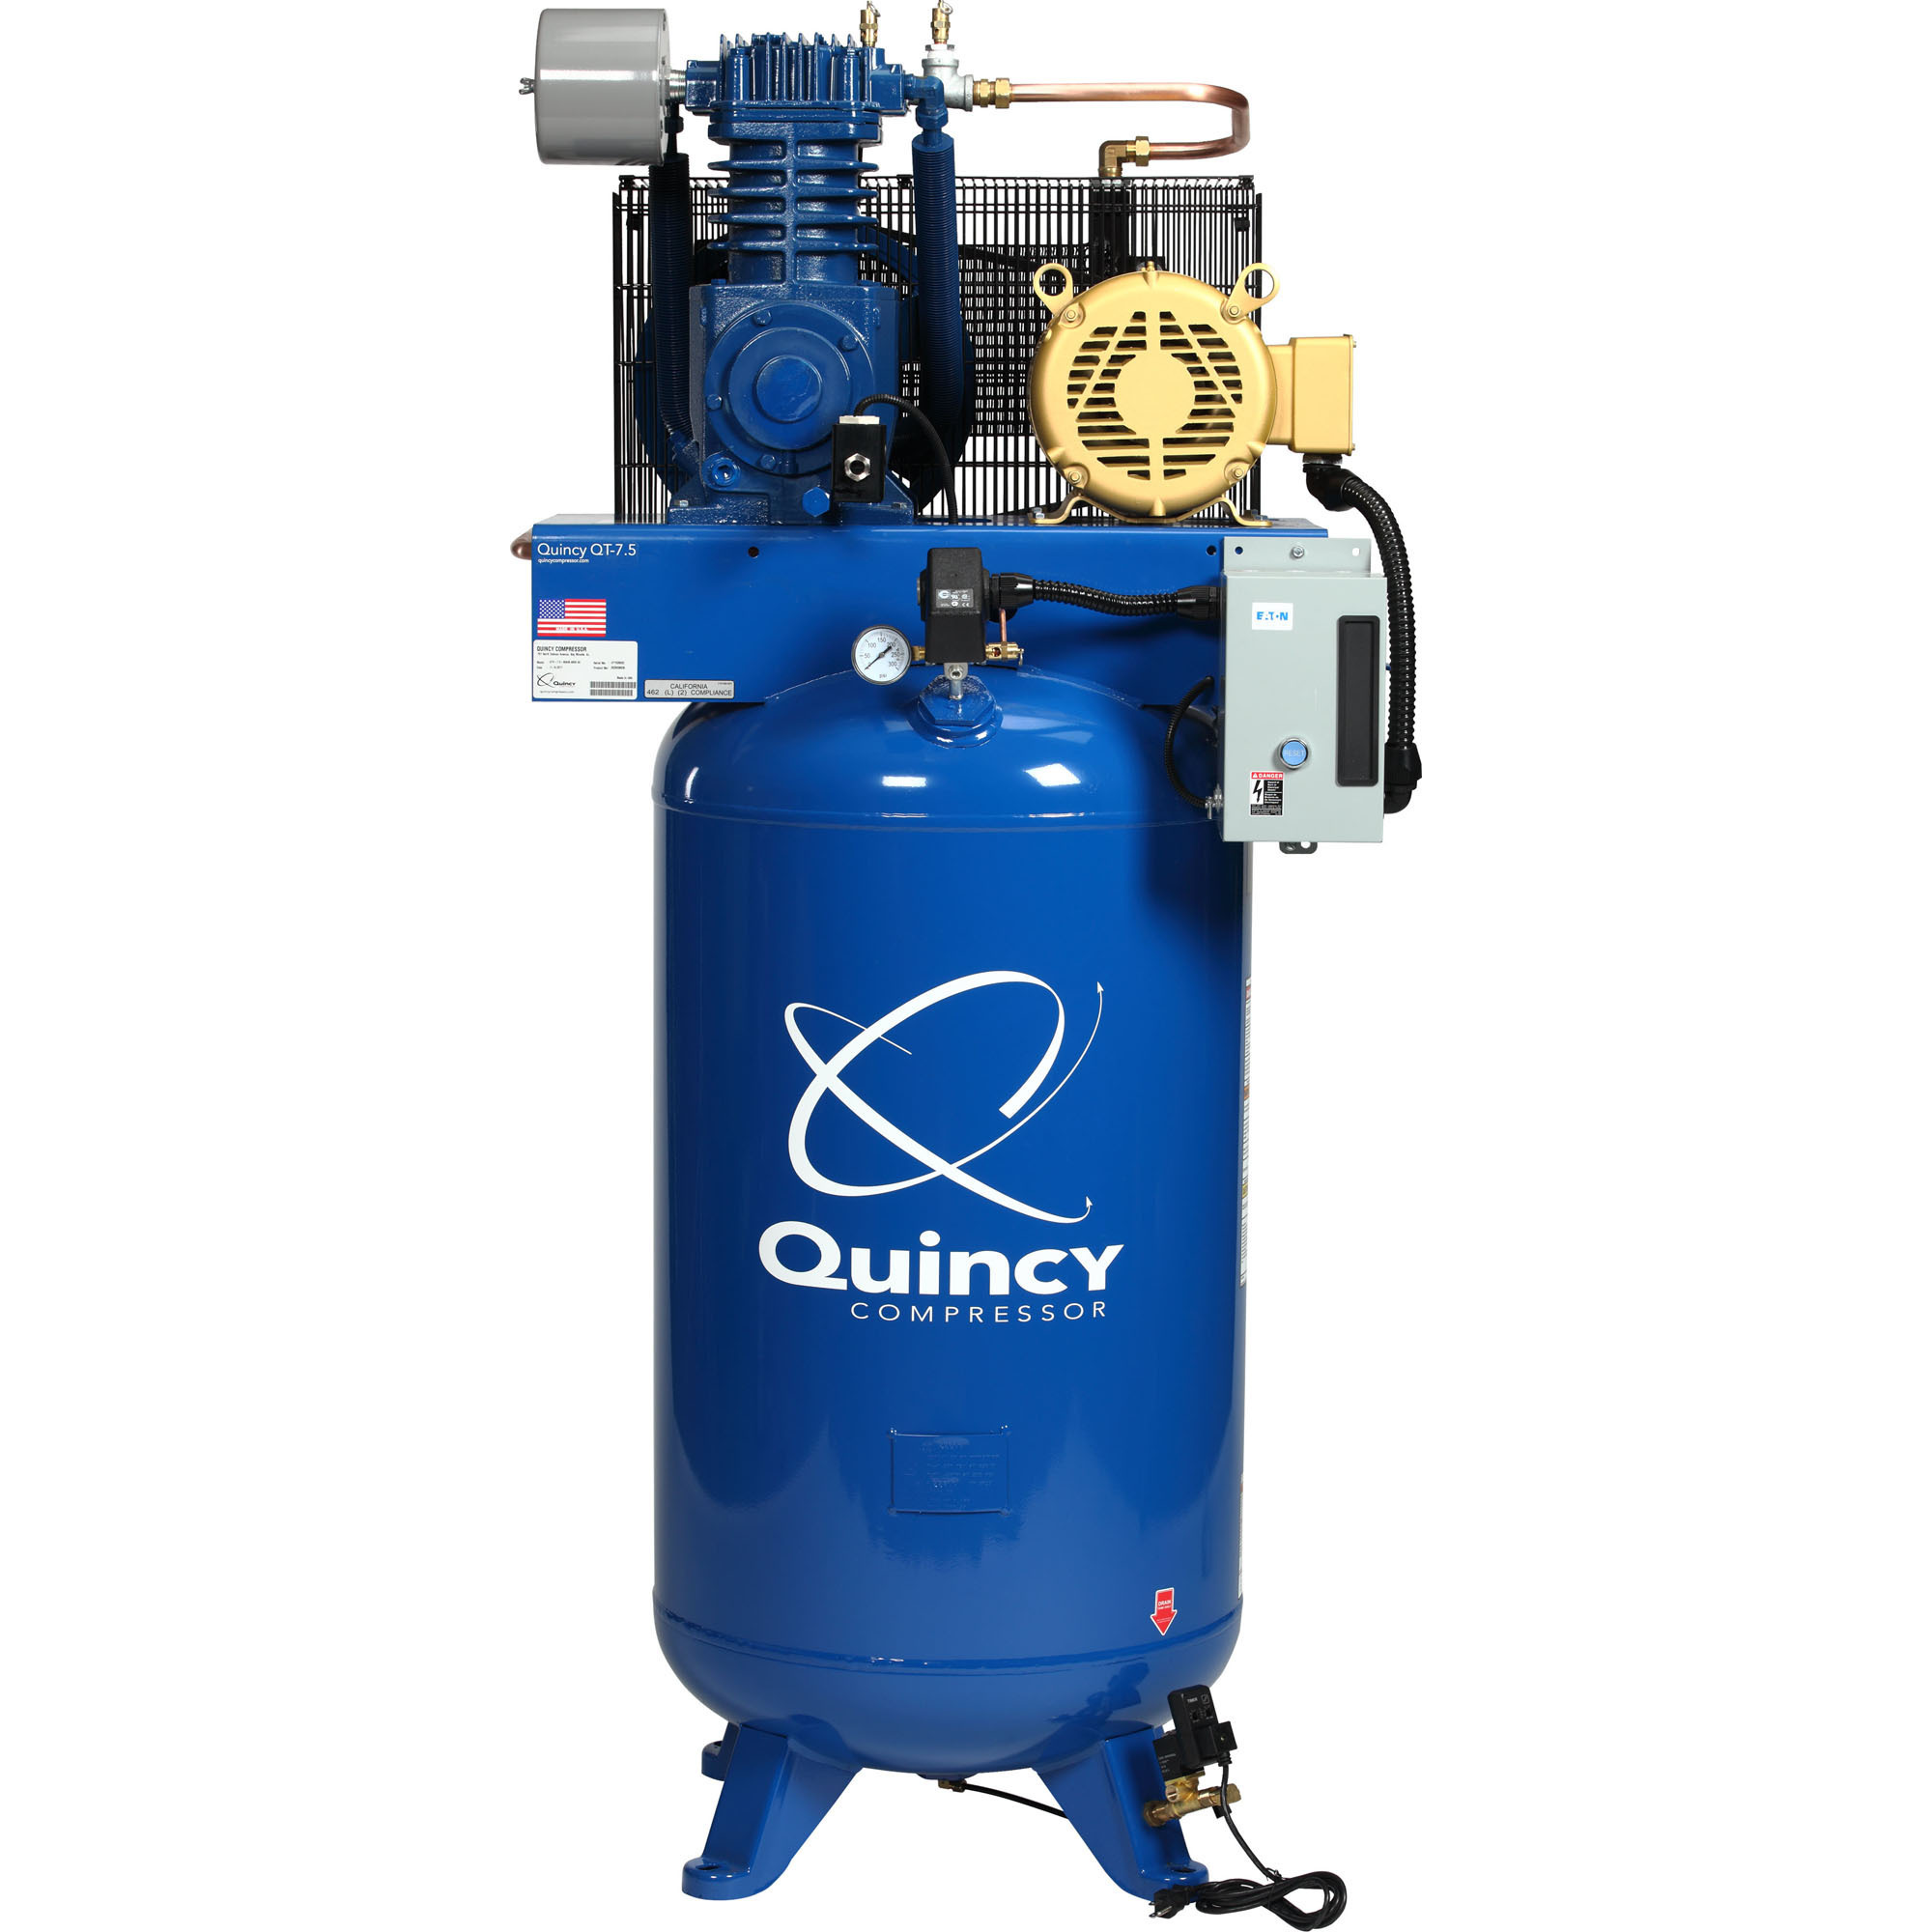 Quincy Compressor 2020040725